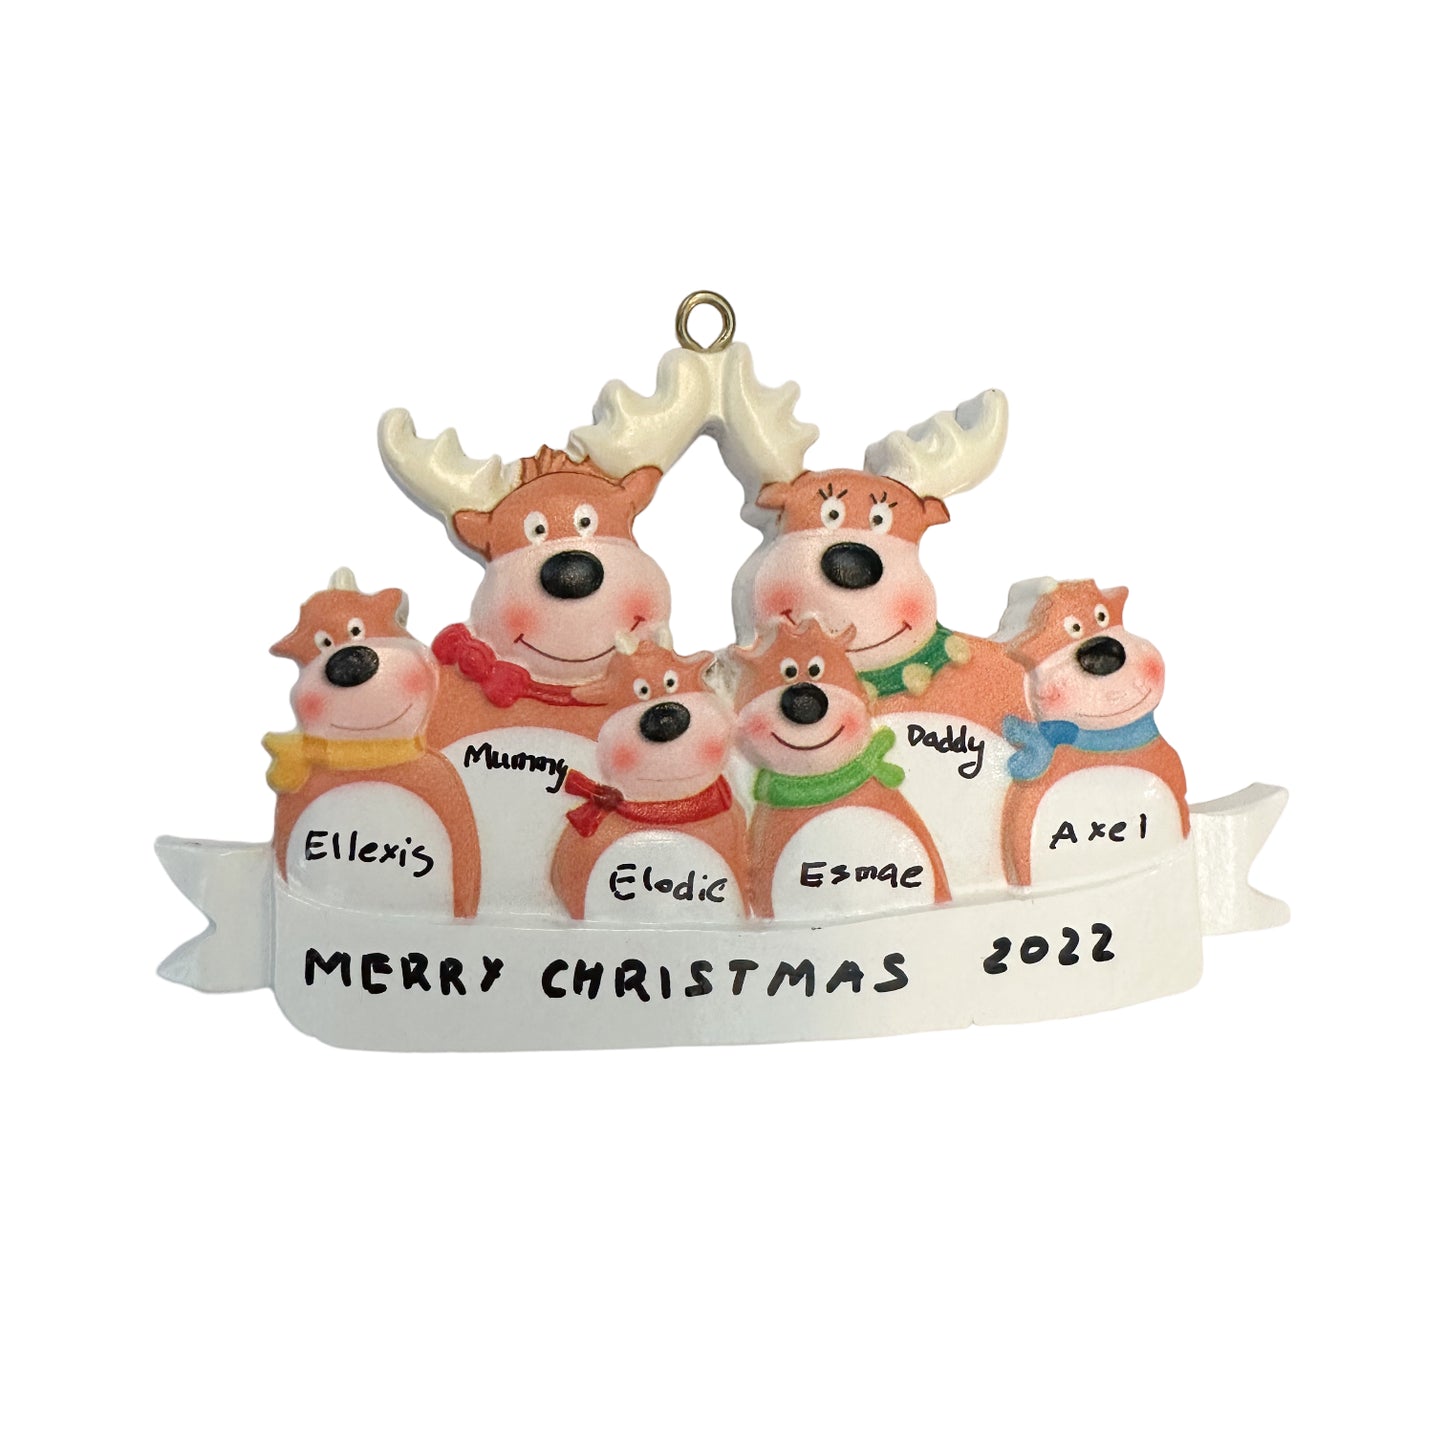 Personalised Christmas Ornaments - Deers